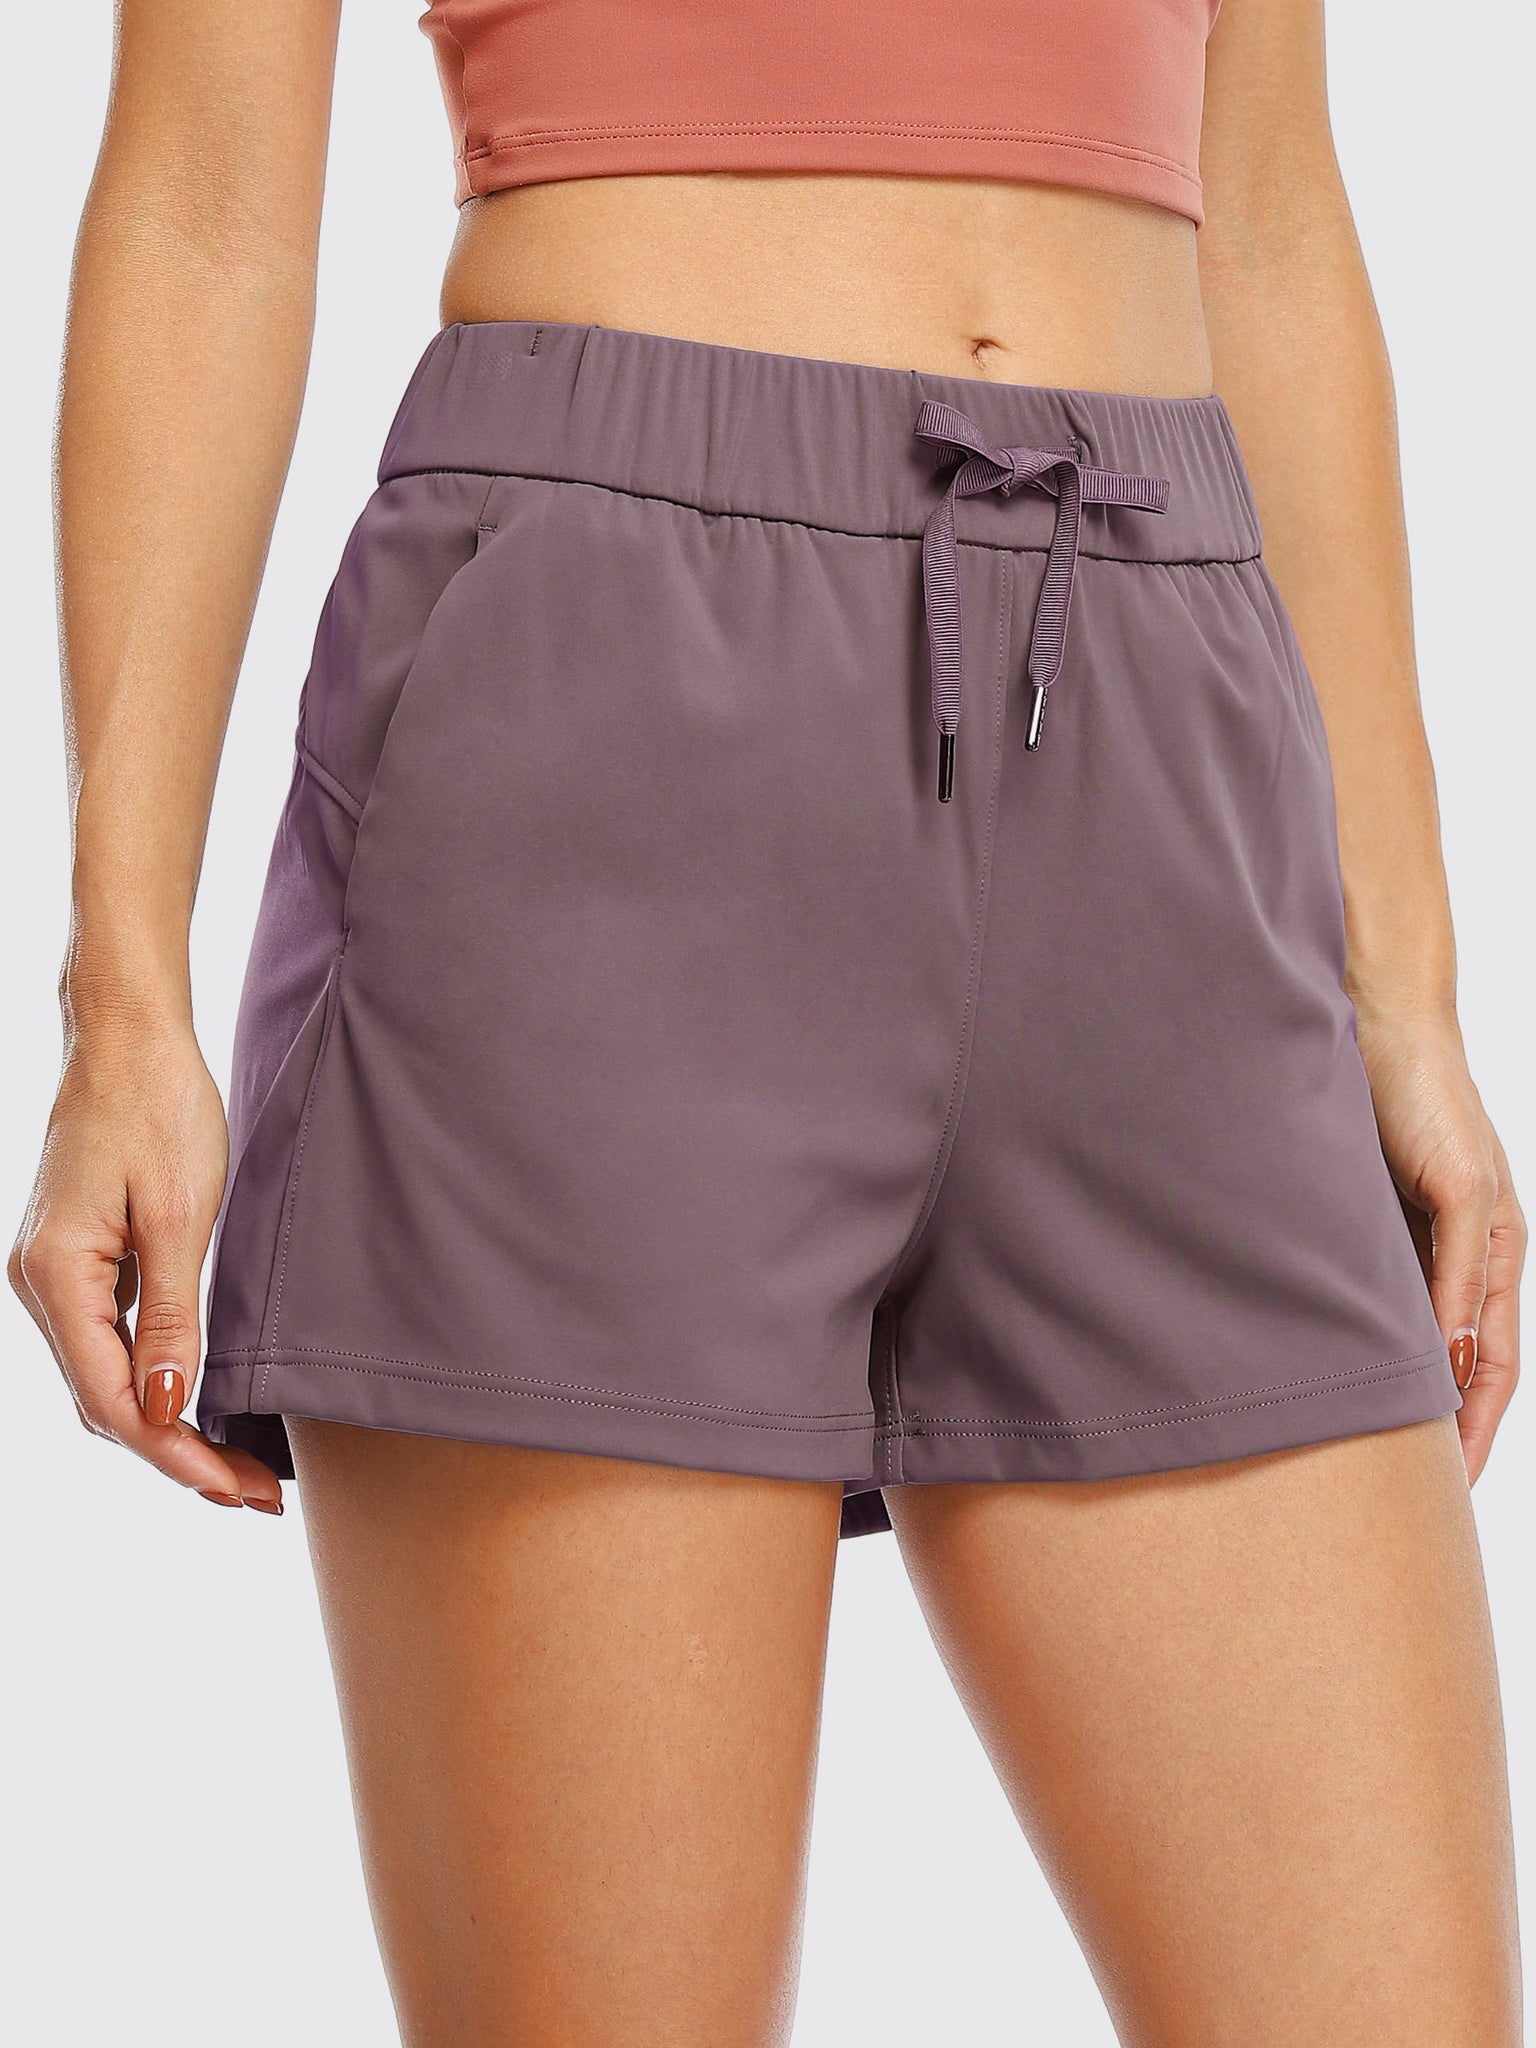 Willit Women's Summer 2.5 Inch Shorts_Brown3